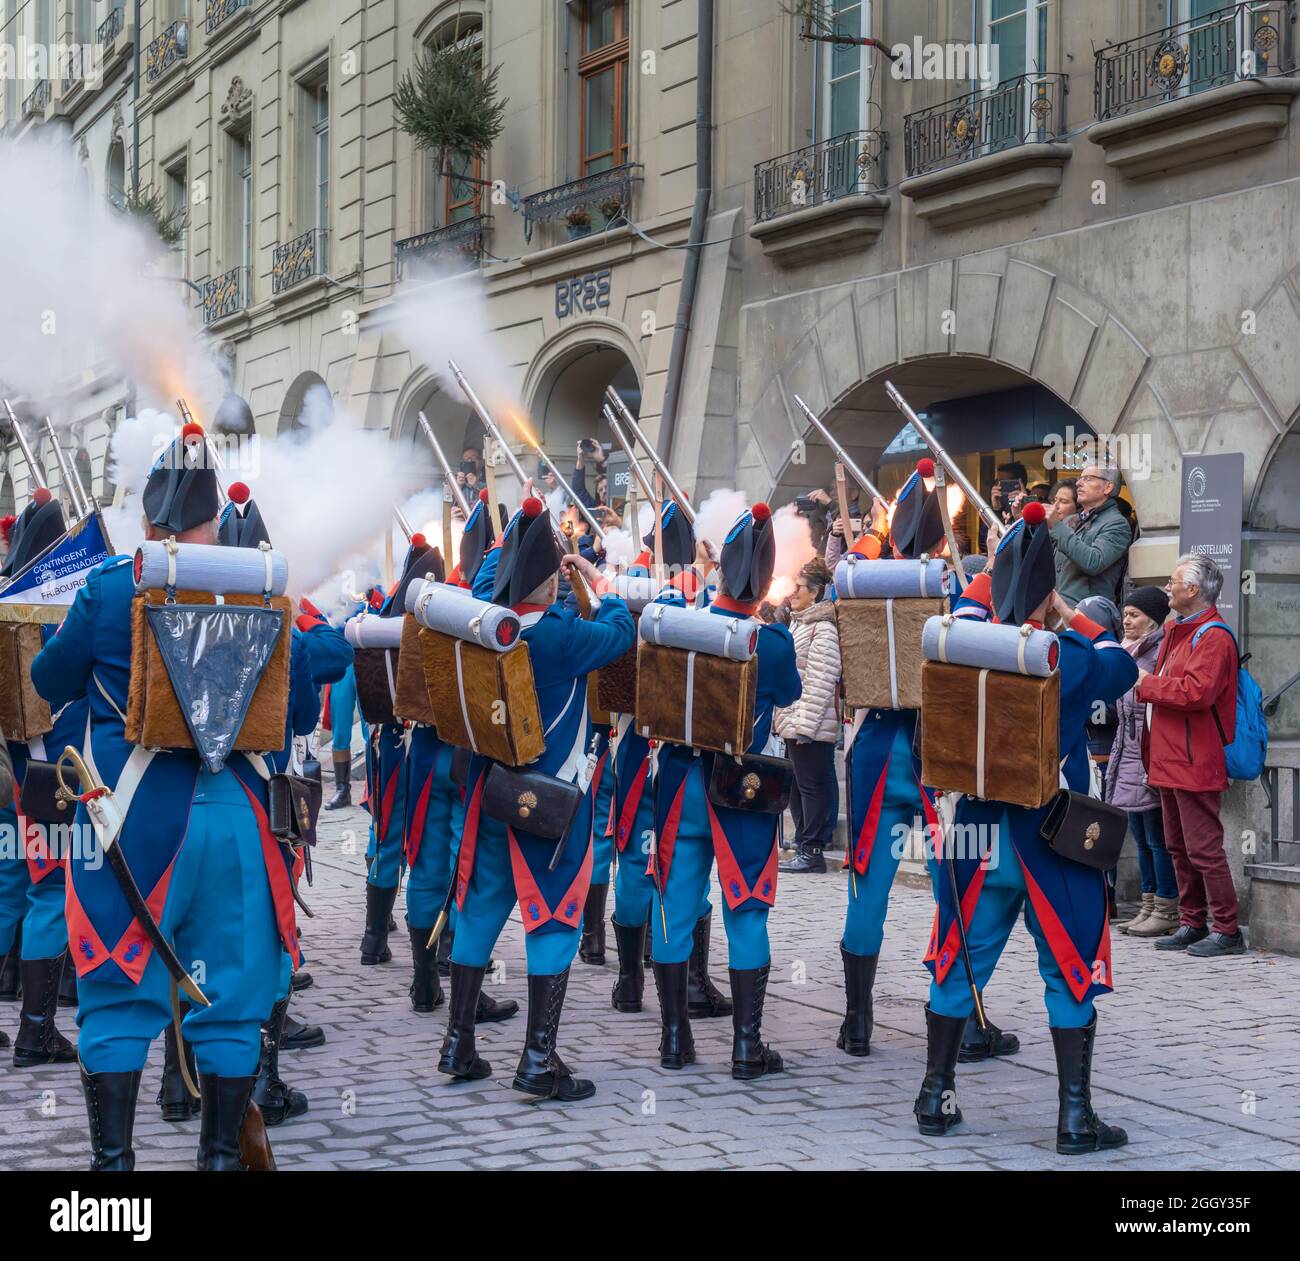 Tiri di fuoco sparati dai soldati svizzeri in costume tradizionale durante una sfilata di Zibelemarit Holiday (mercato delle cipolle) - Berna, Svizzera Foto Stock